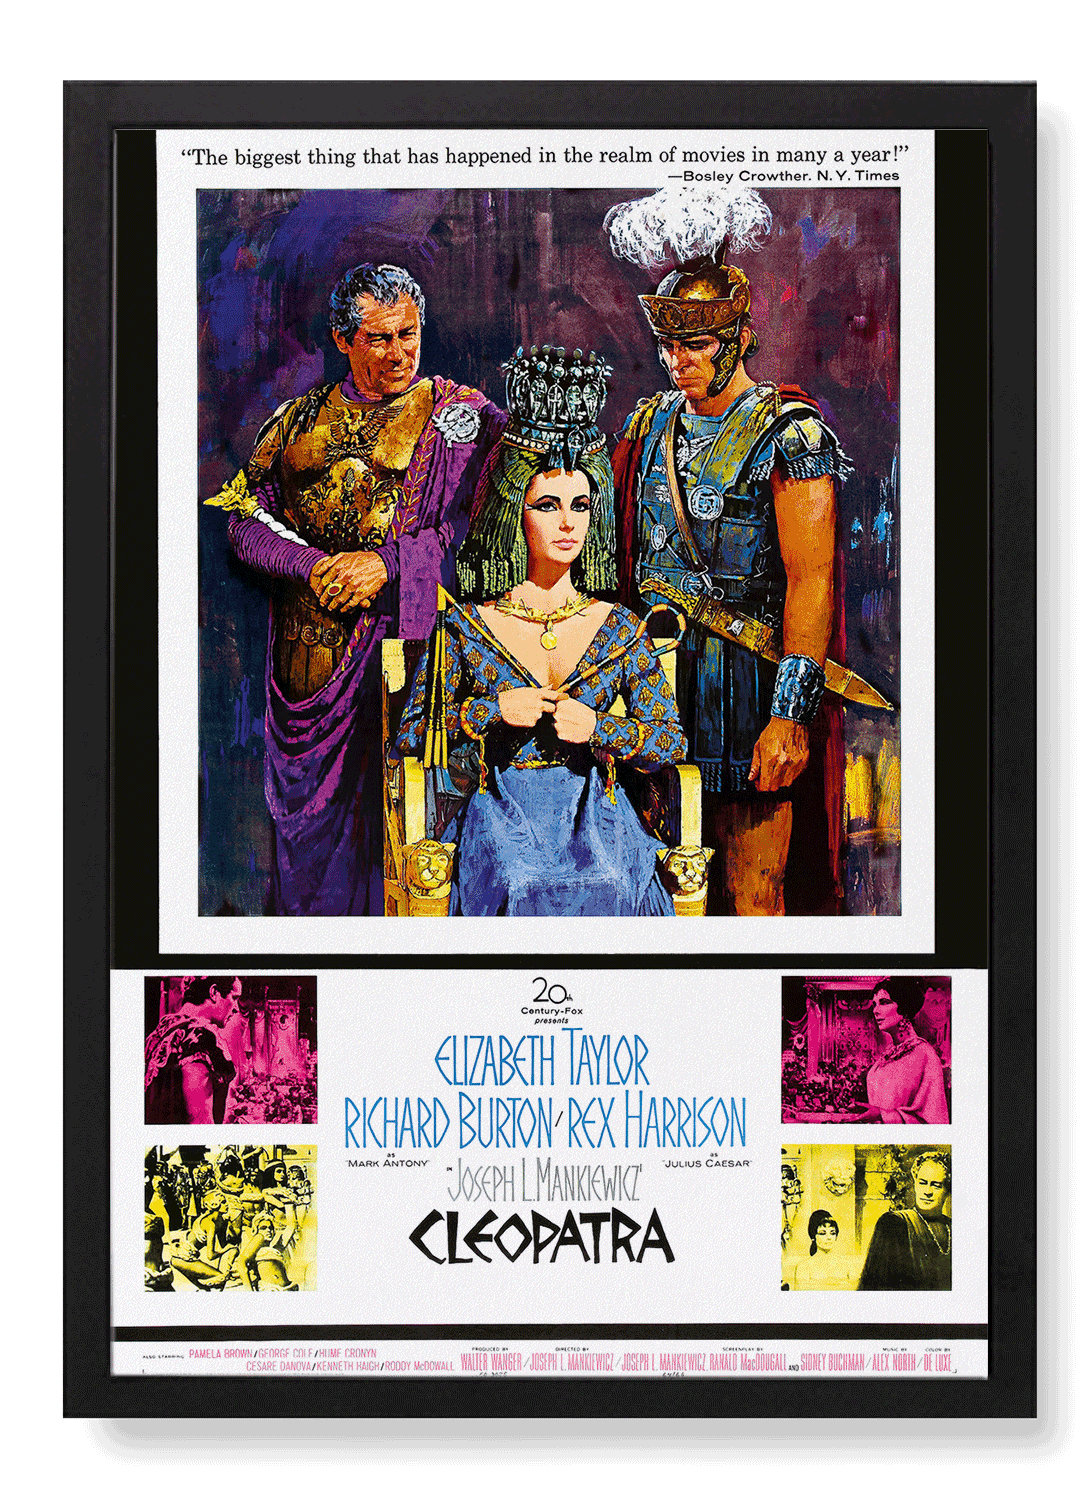 CLEOPATRA (1963)